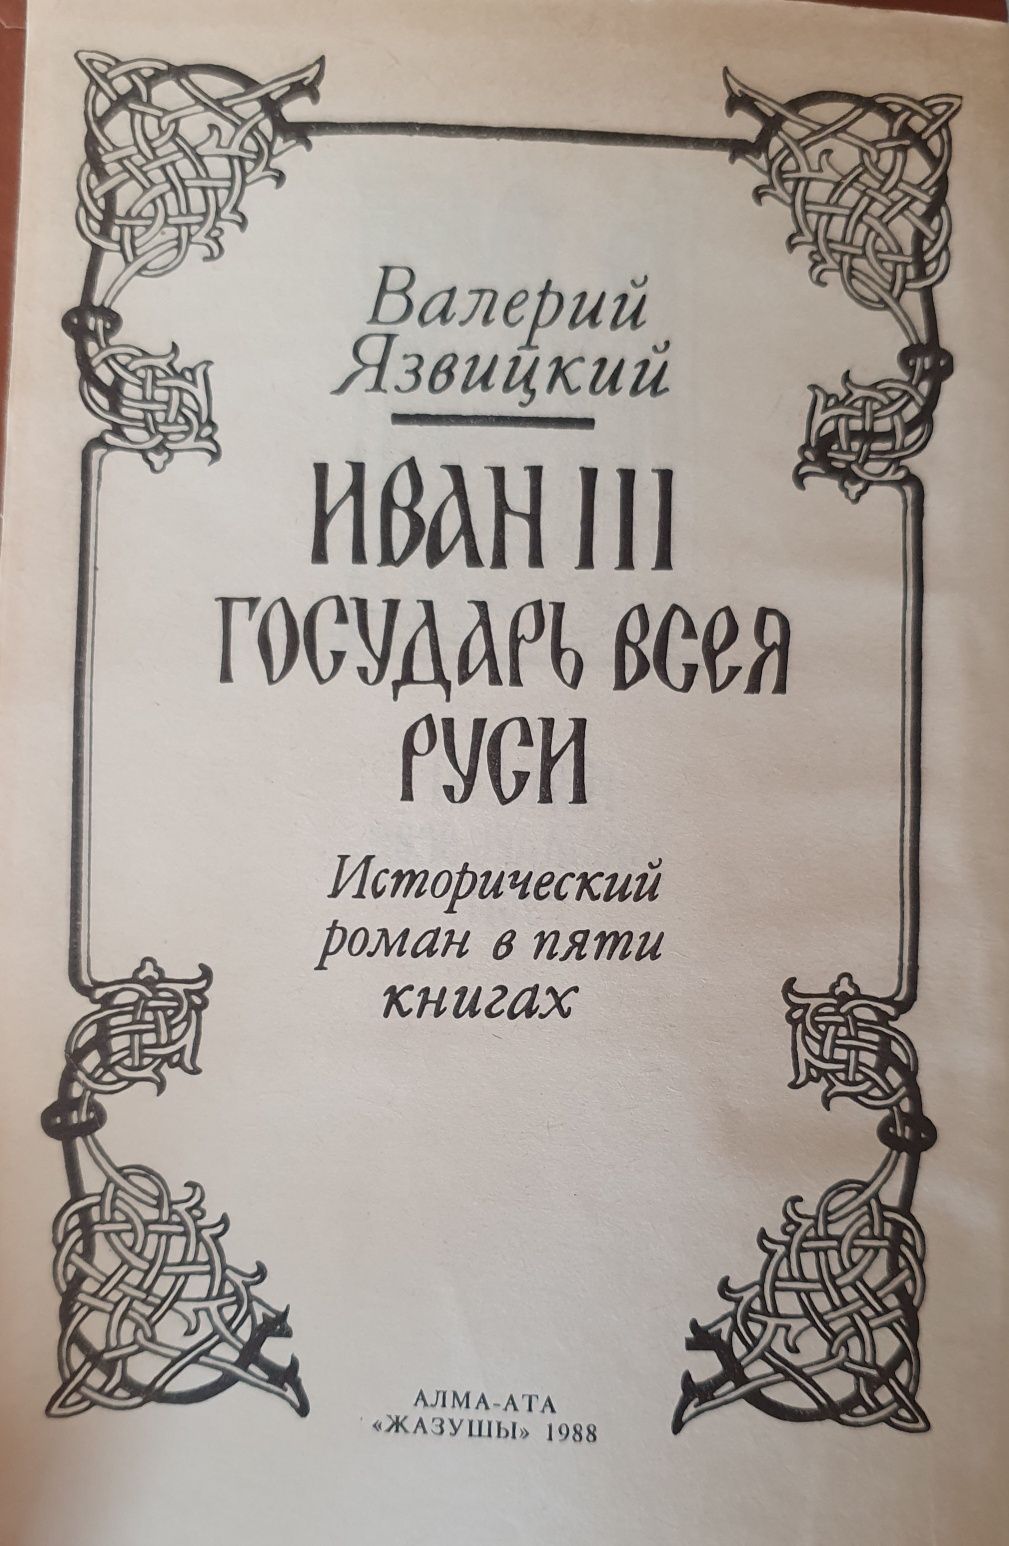 2-томник В.Язвицкий Иван III  Государь всея Руси